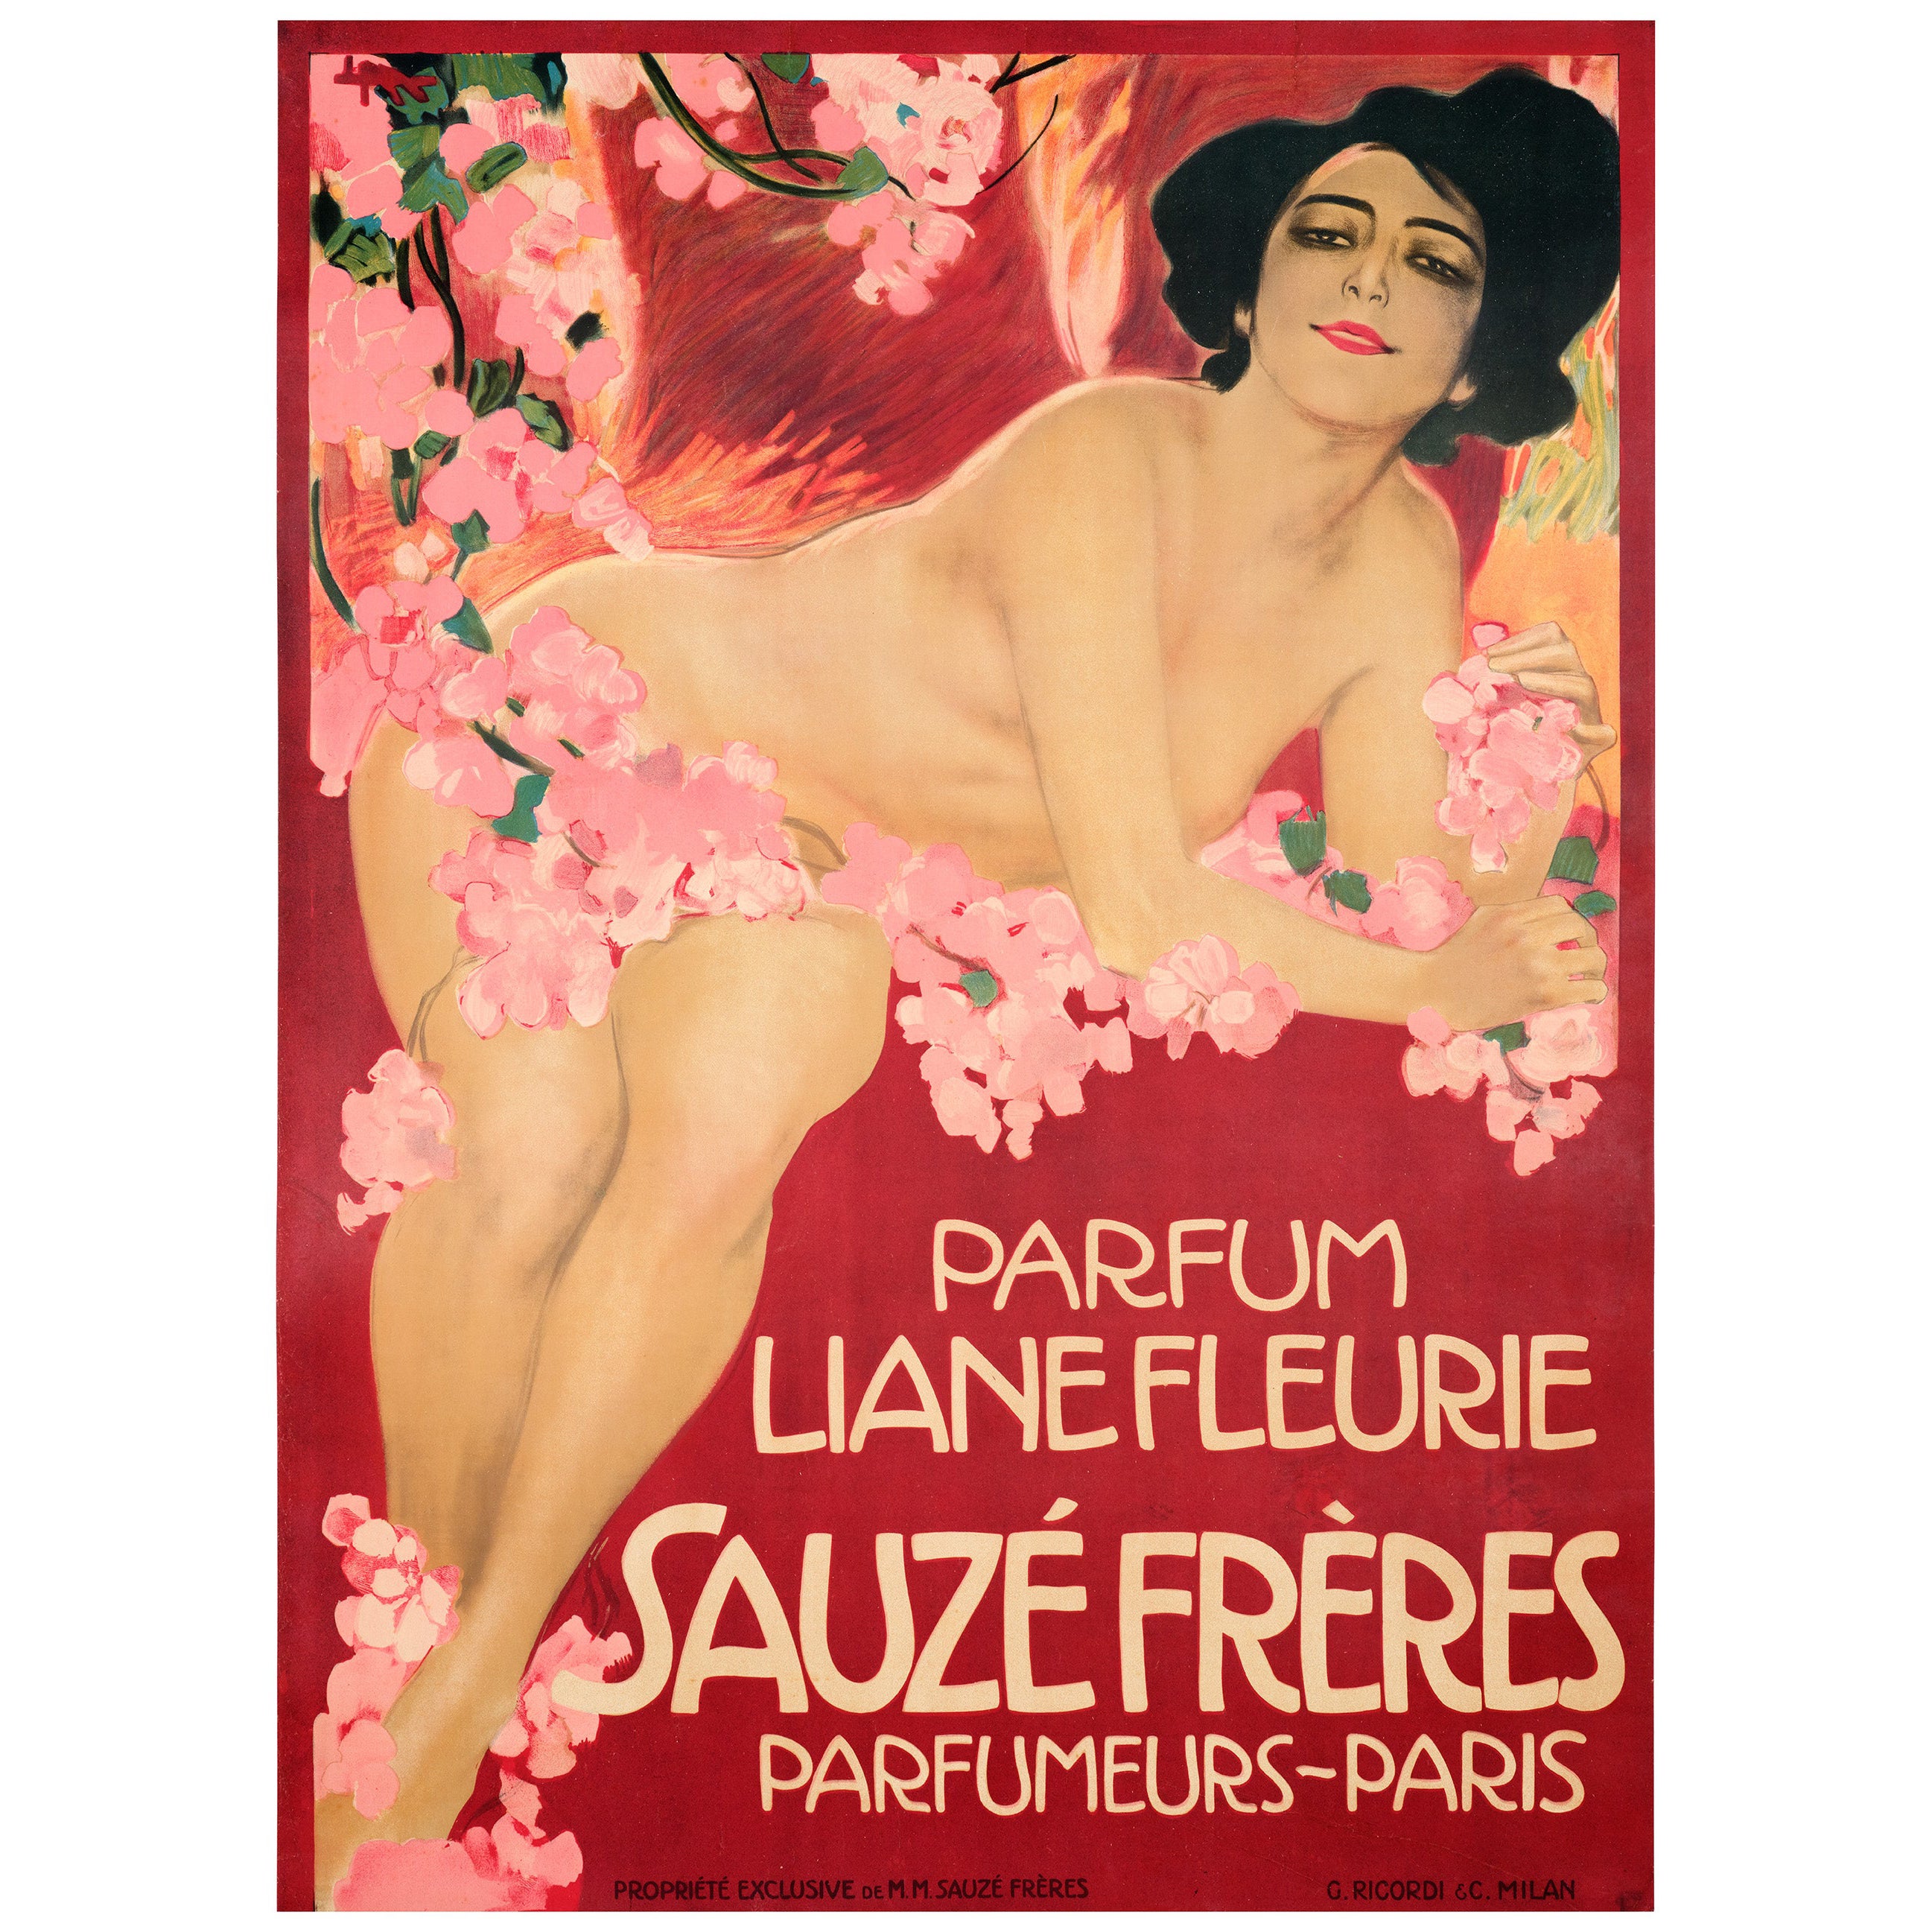 Metlicovitz, affiche originale Art Nouveau, Liane Fleurie Sauze Perfume Paris 1910